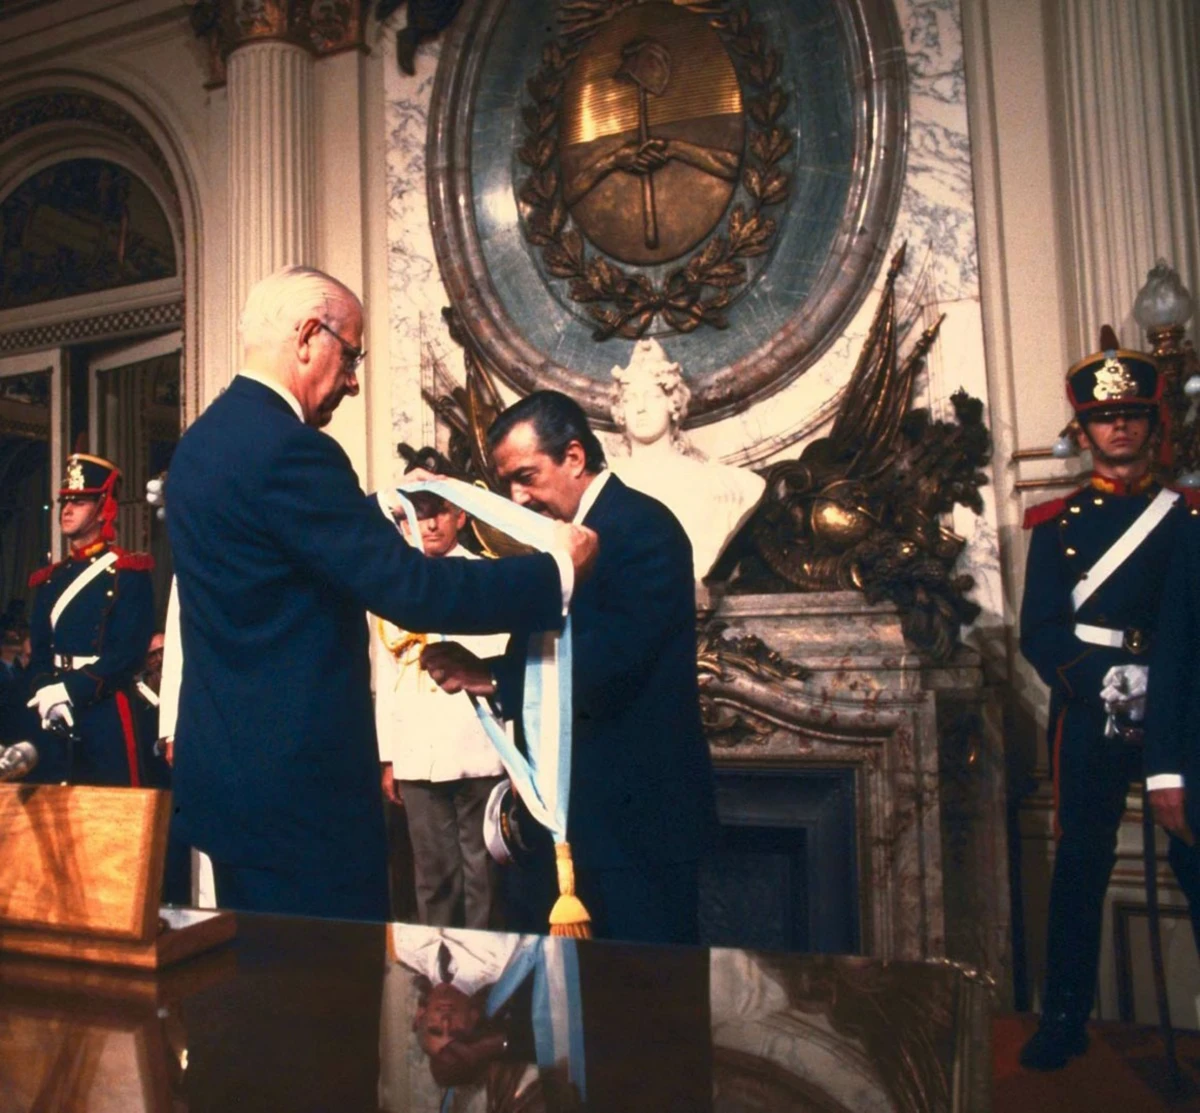 10 DE DICIEMRE DE 1983. El dictador Bignone le coloca la banda a Alfonsín. Fue el epílogo de una tensa transición. 